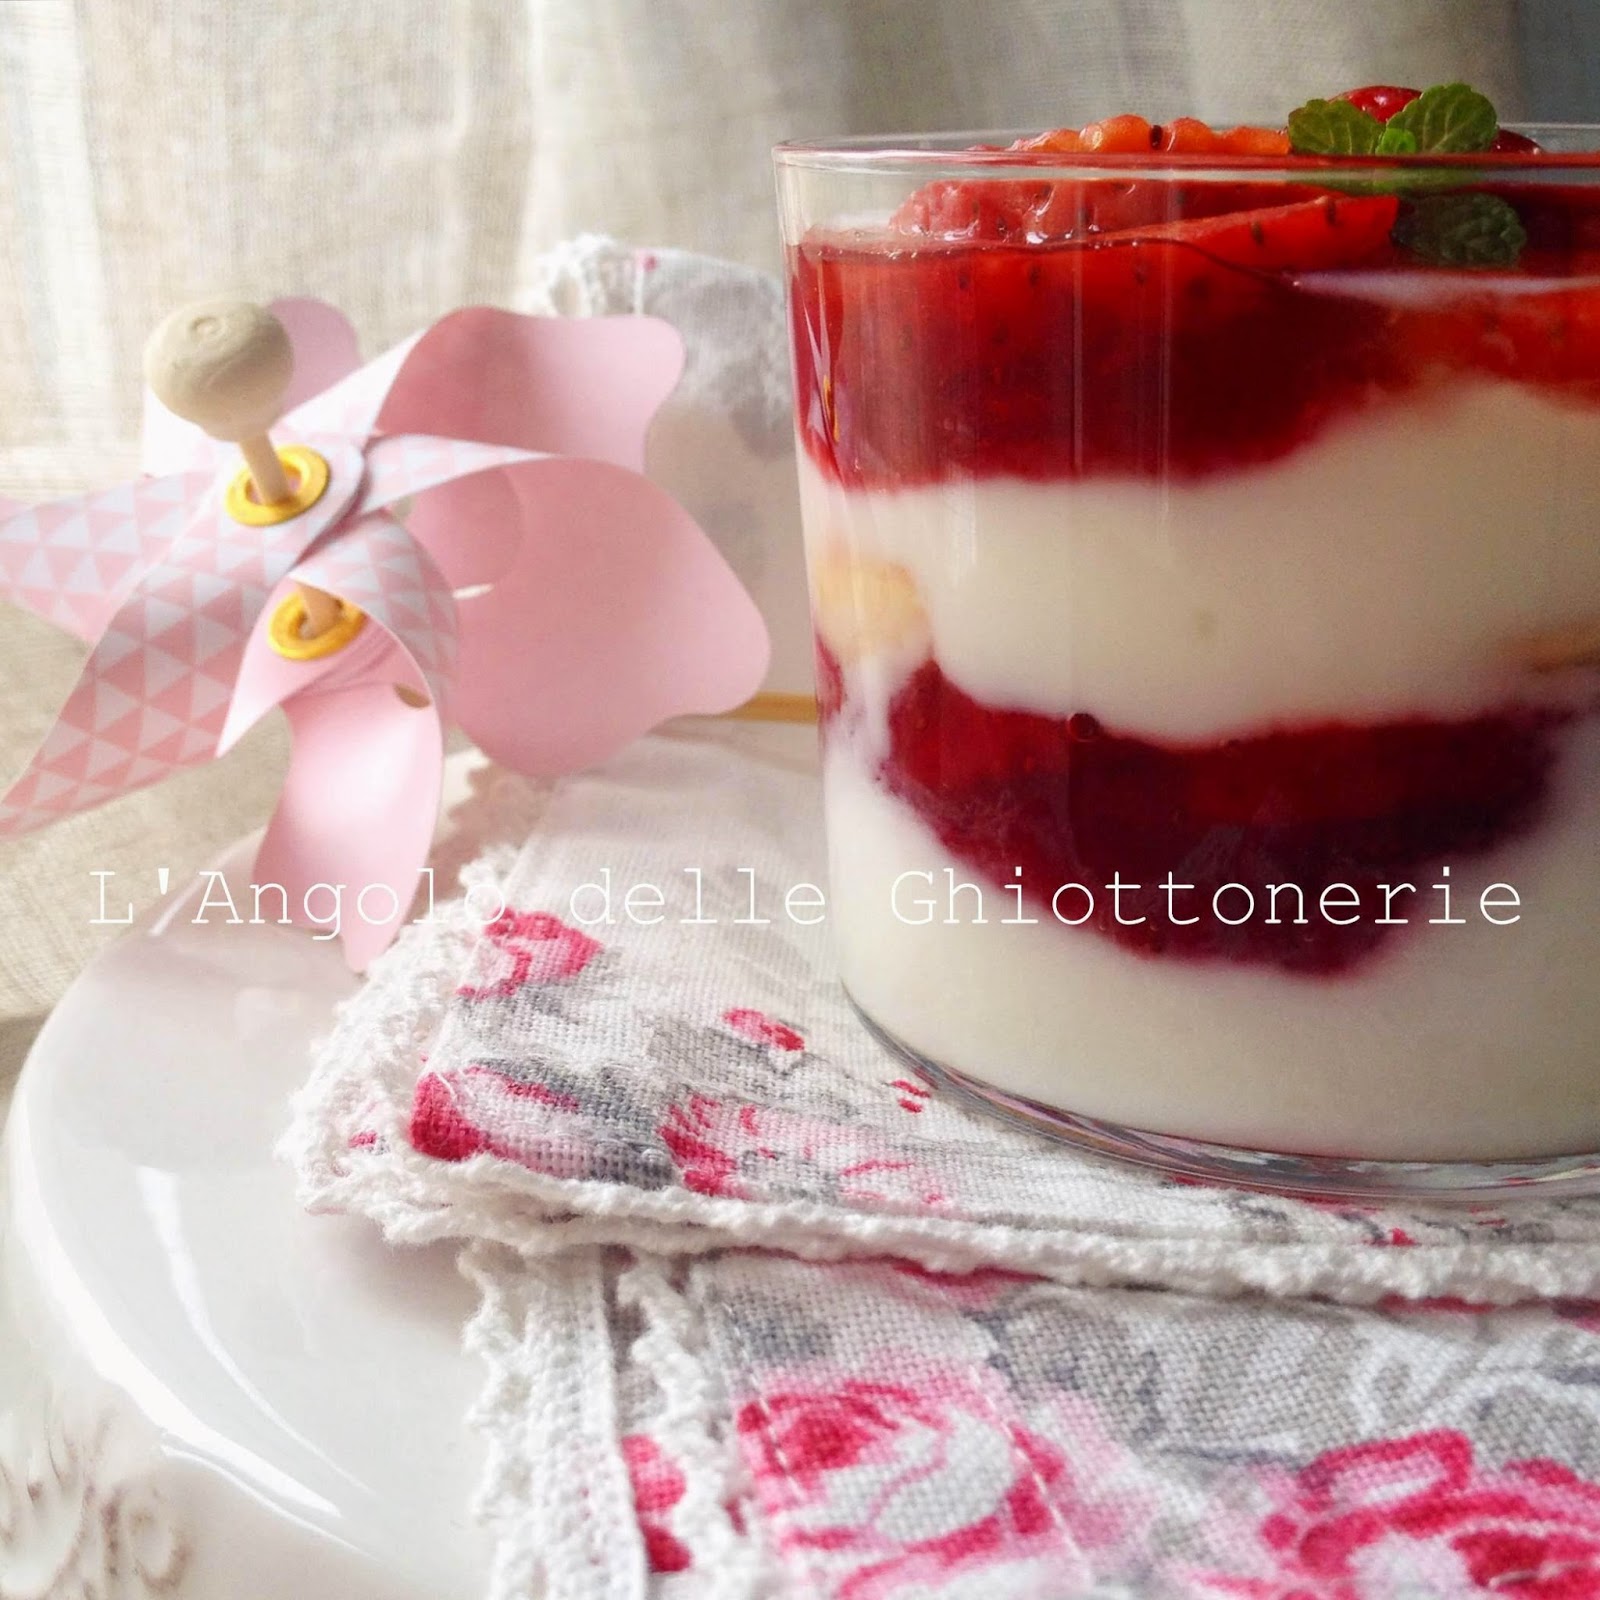 coppette variegate con yogurt bianco e fragole, mandorle e menta